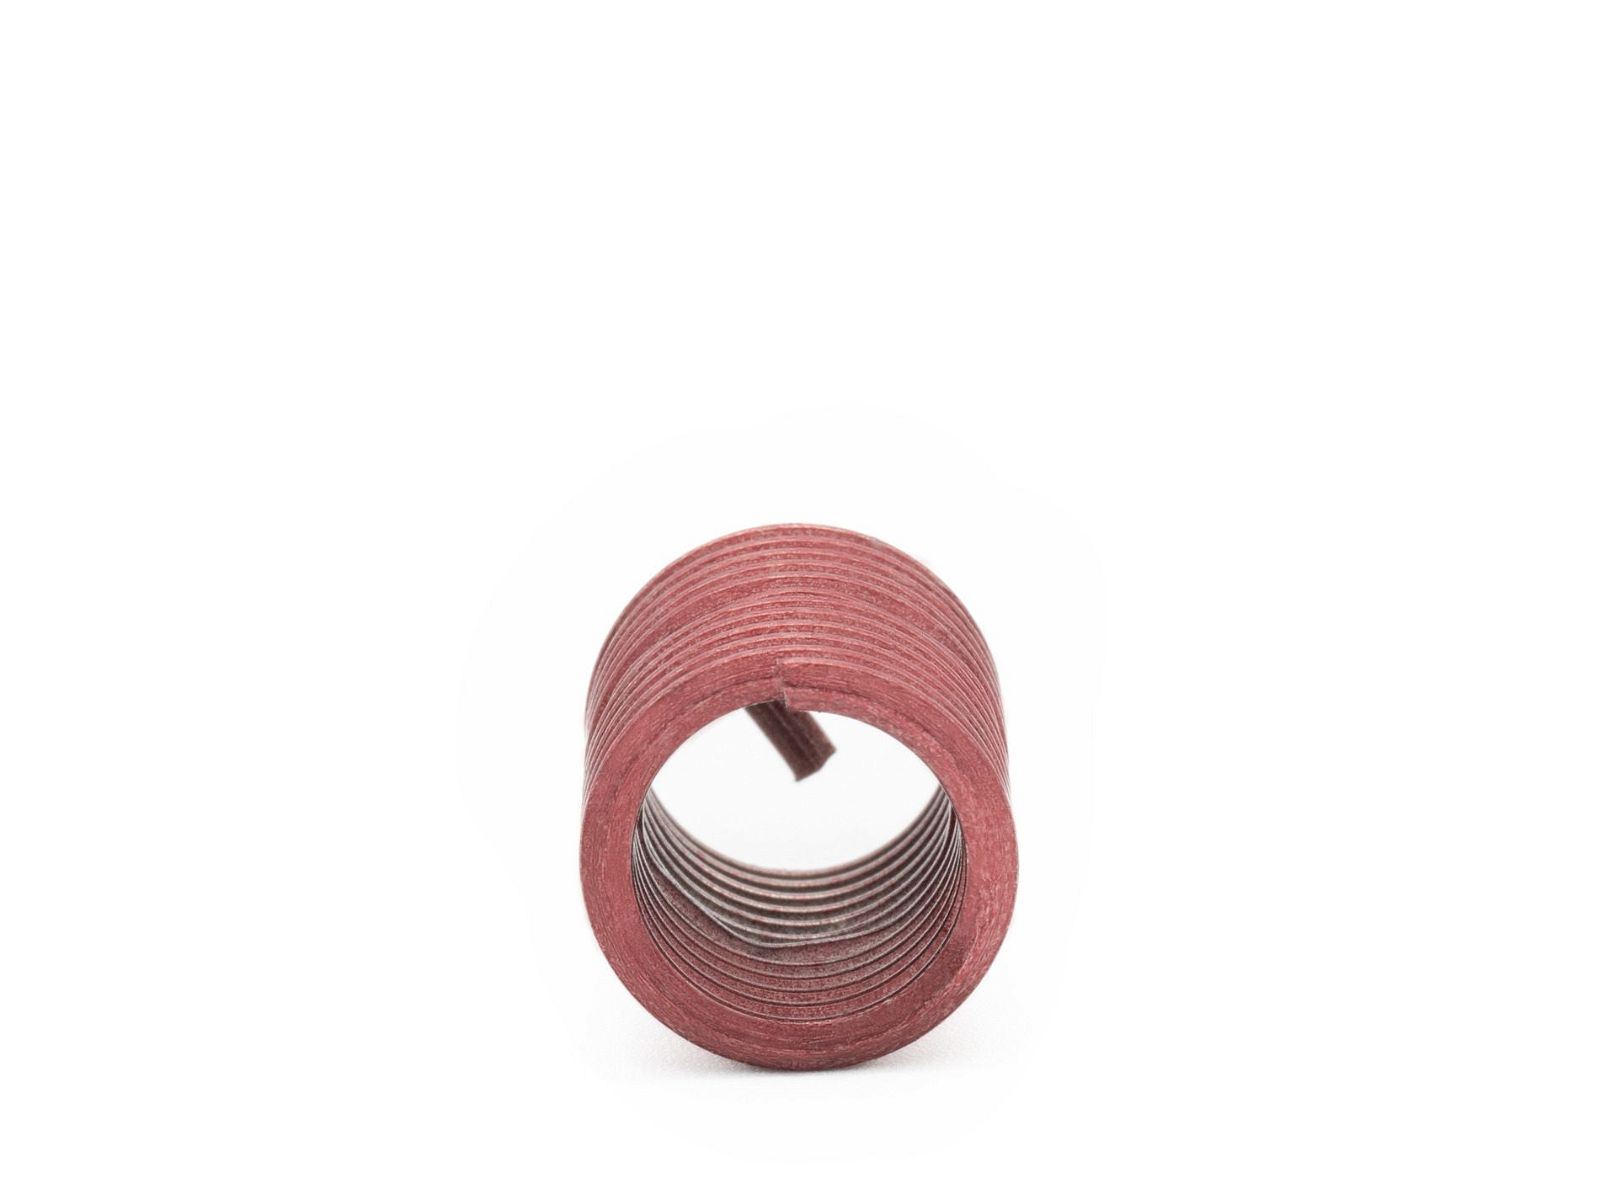 BaerCoil Drahtgewindeeinsätze UNC 1“ x 8 - 2,0 D (50,8 mm) - screw grip (schraubensichernd) - 10 Stück